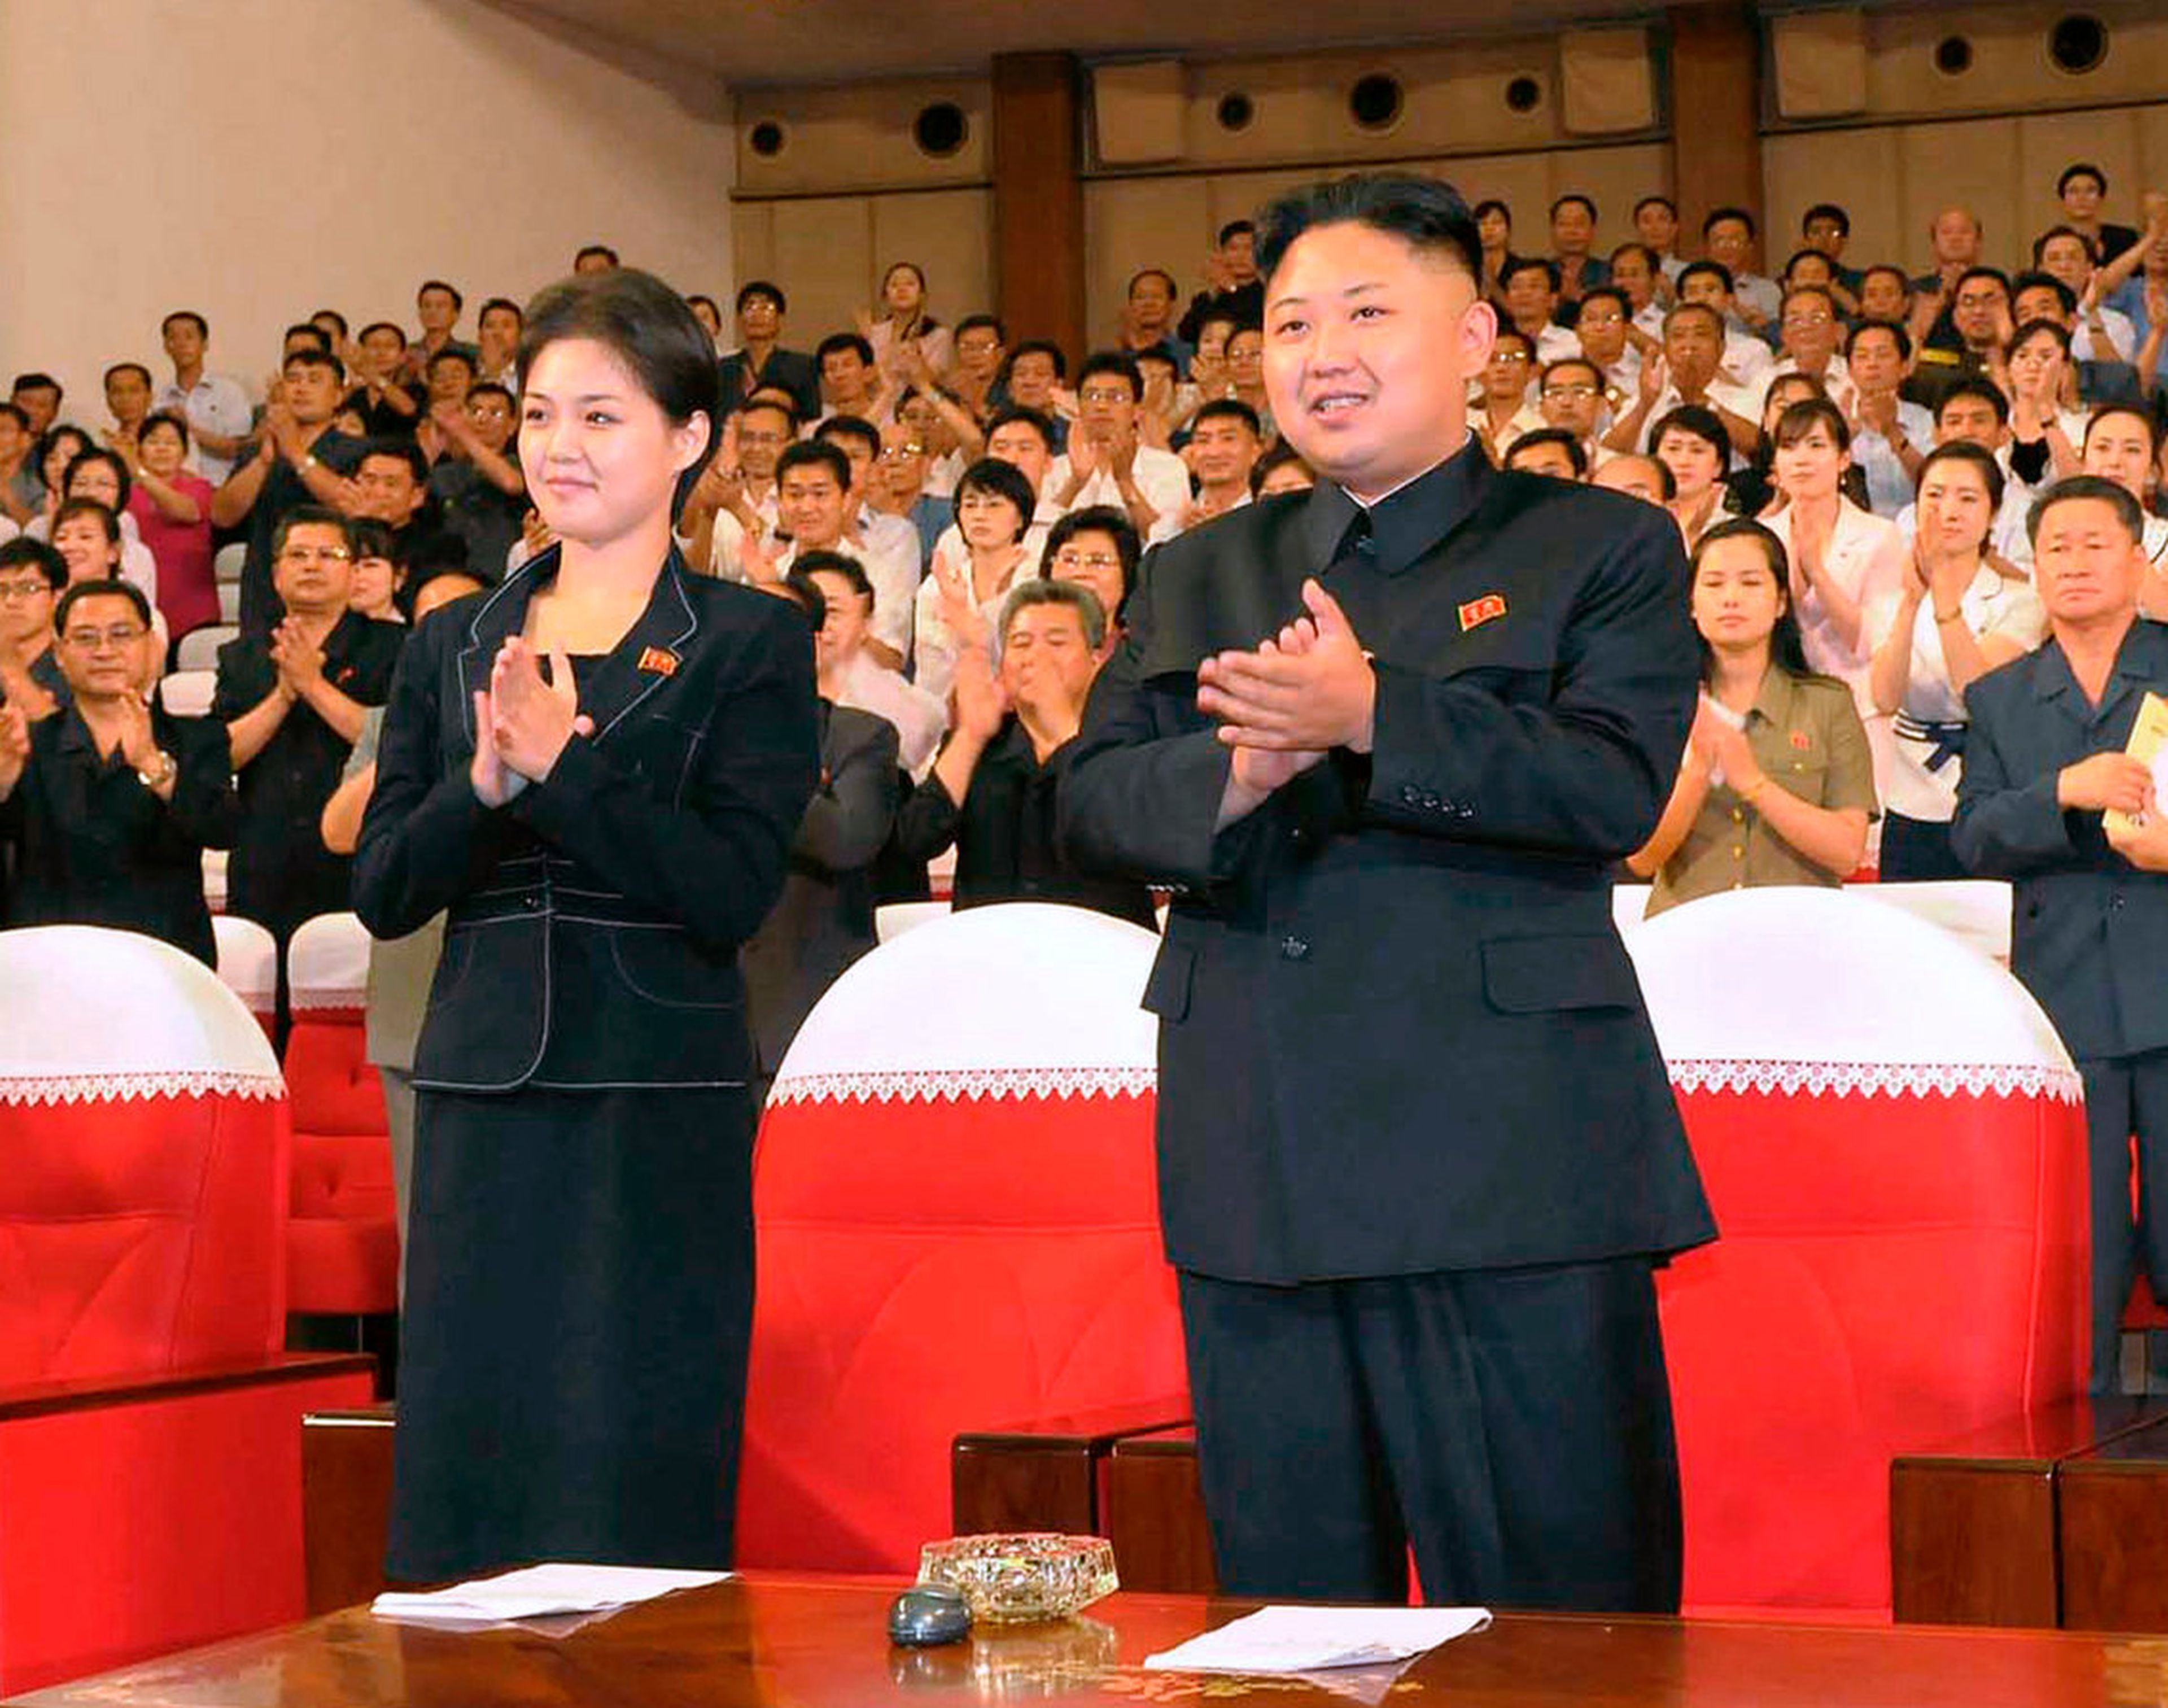 Kim aplaude junto a su mujer tras una actuación de la nueva banda Moranbong en Pyongyang, en una fotografía sin fecha publicada por la KCNA el 9 de julio de 2012.